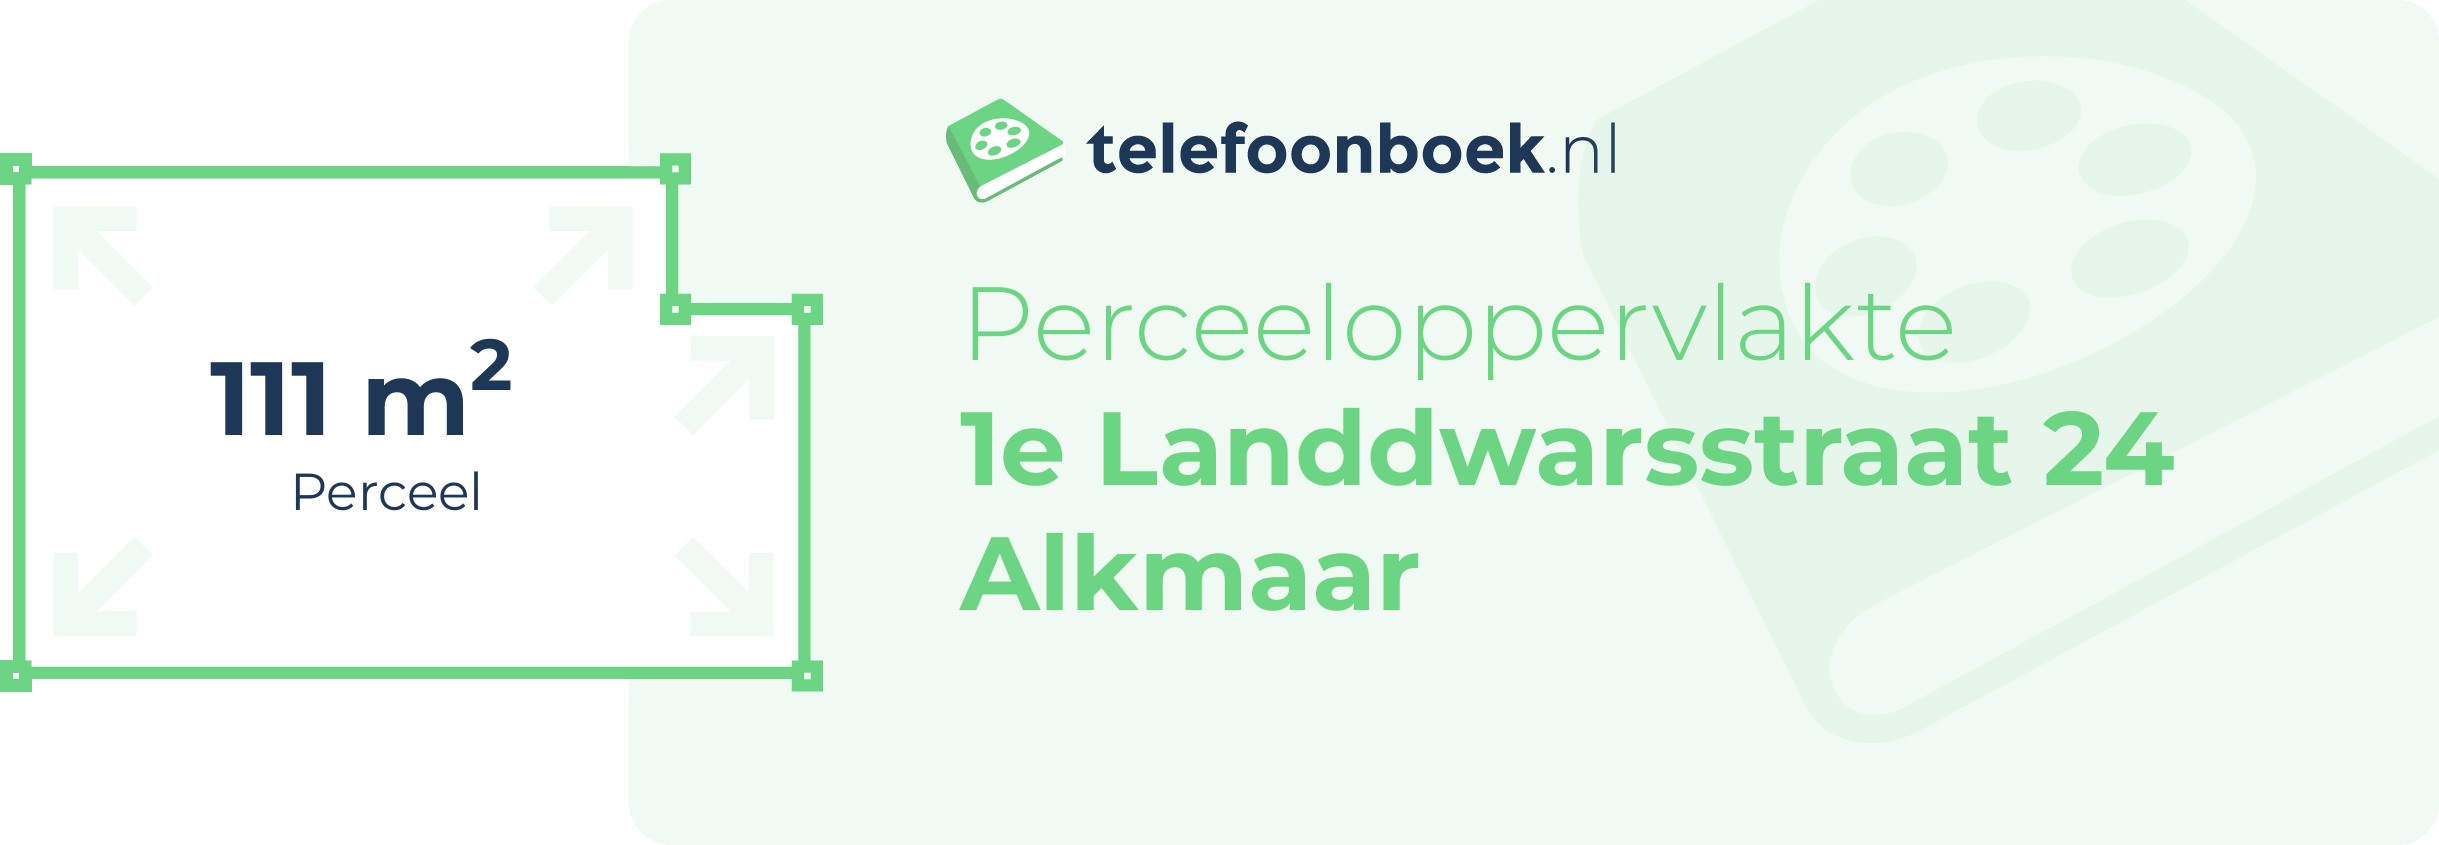 Perceeloppervlakte 1e Landdwarsstraat 24 Alkmaar